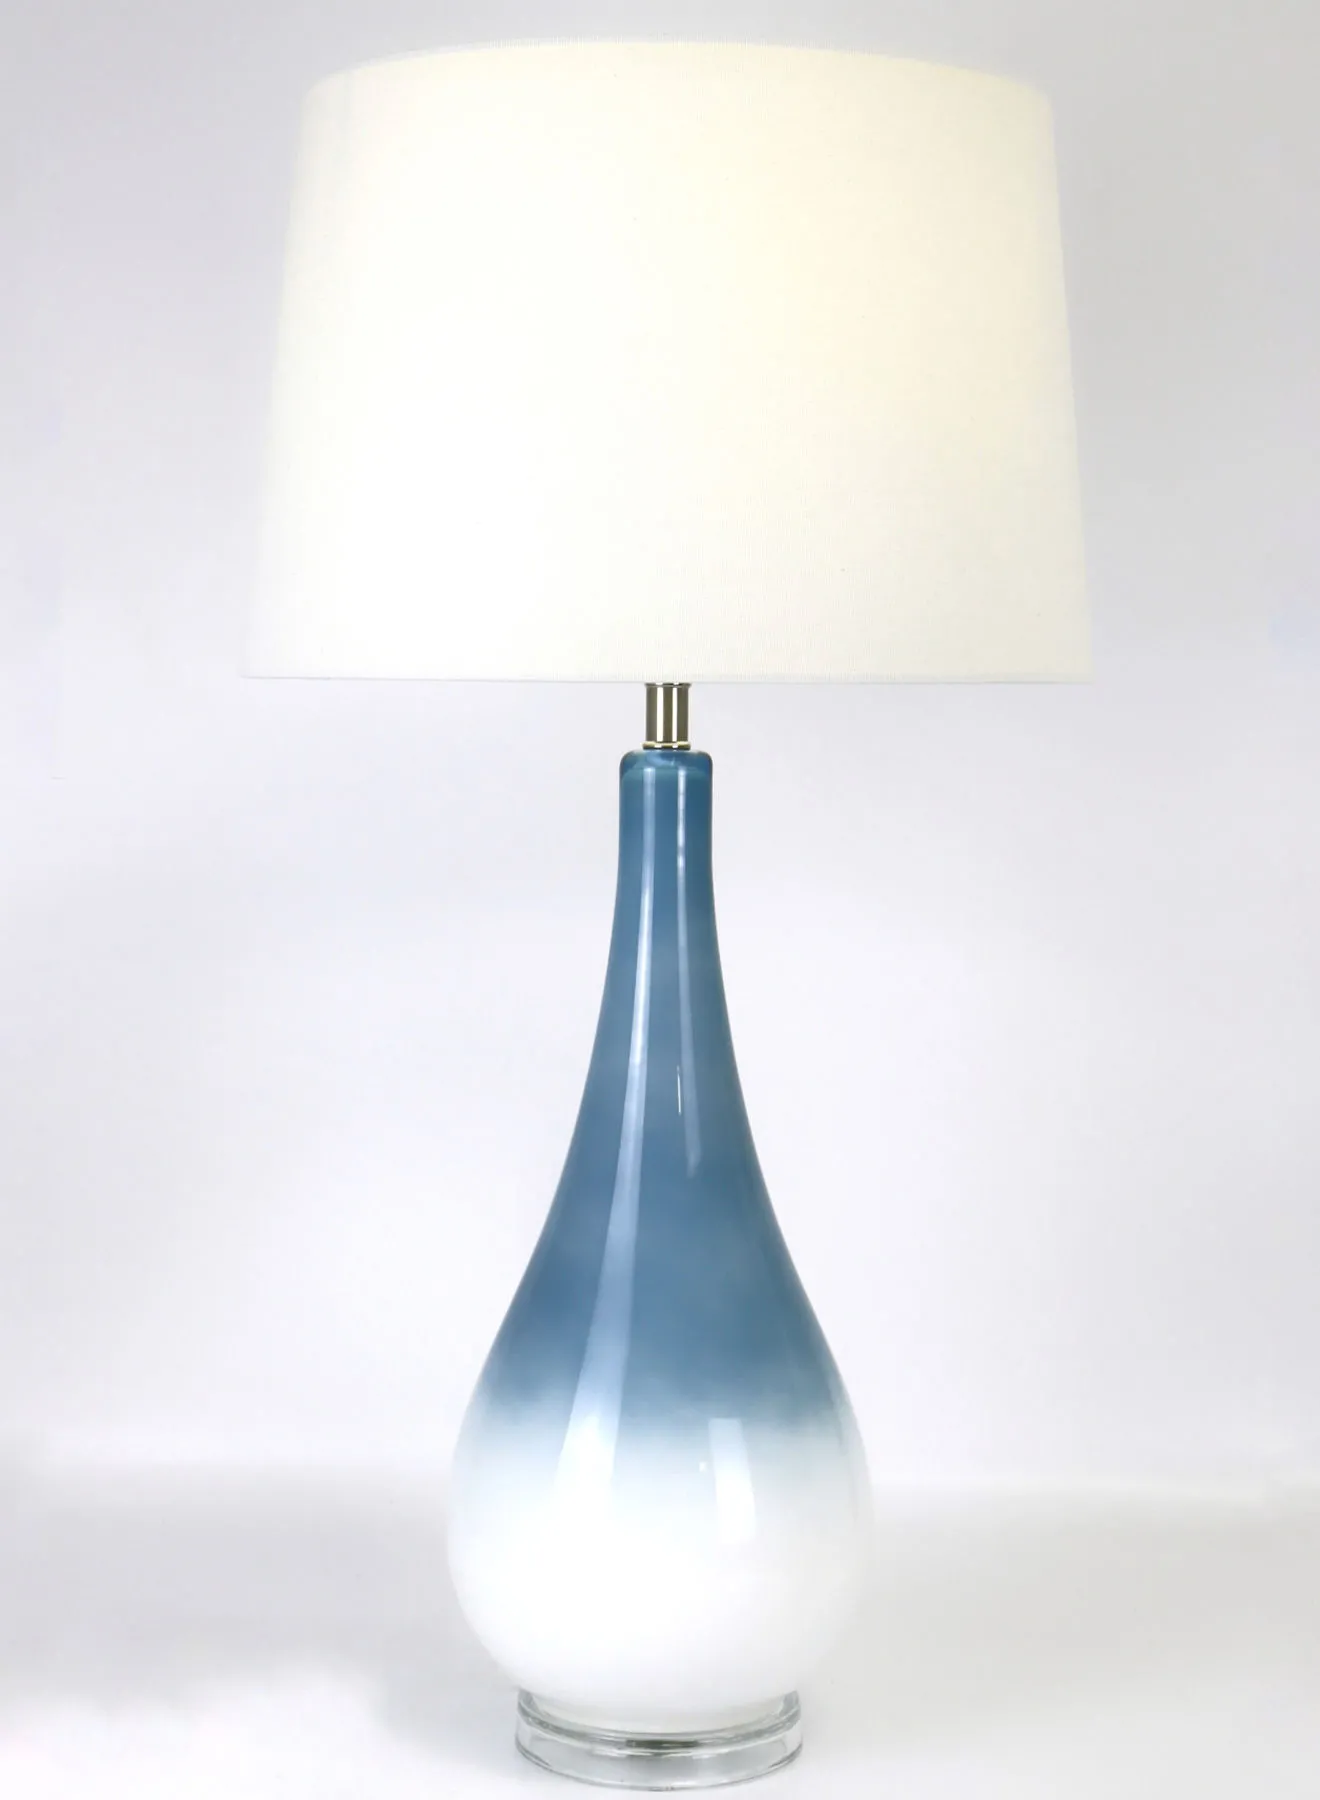 مصباح طاولة زجاجي بتصميم عصري من ebb & flow مادة فاخرة فريدة من نوعها ذات جودة عالية للمنزل الأنيق المثالي RSN71021 أزرق / أبيض 15 × 28.5